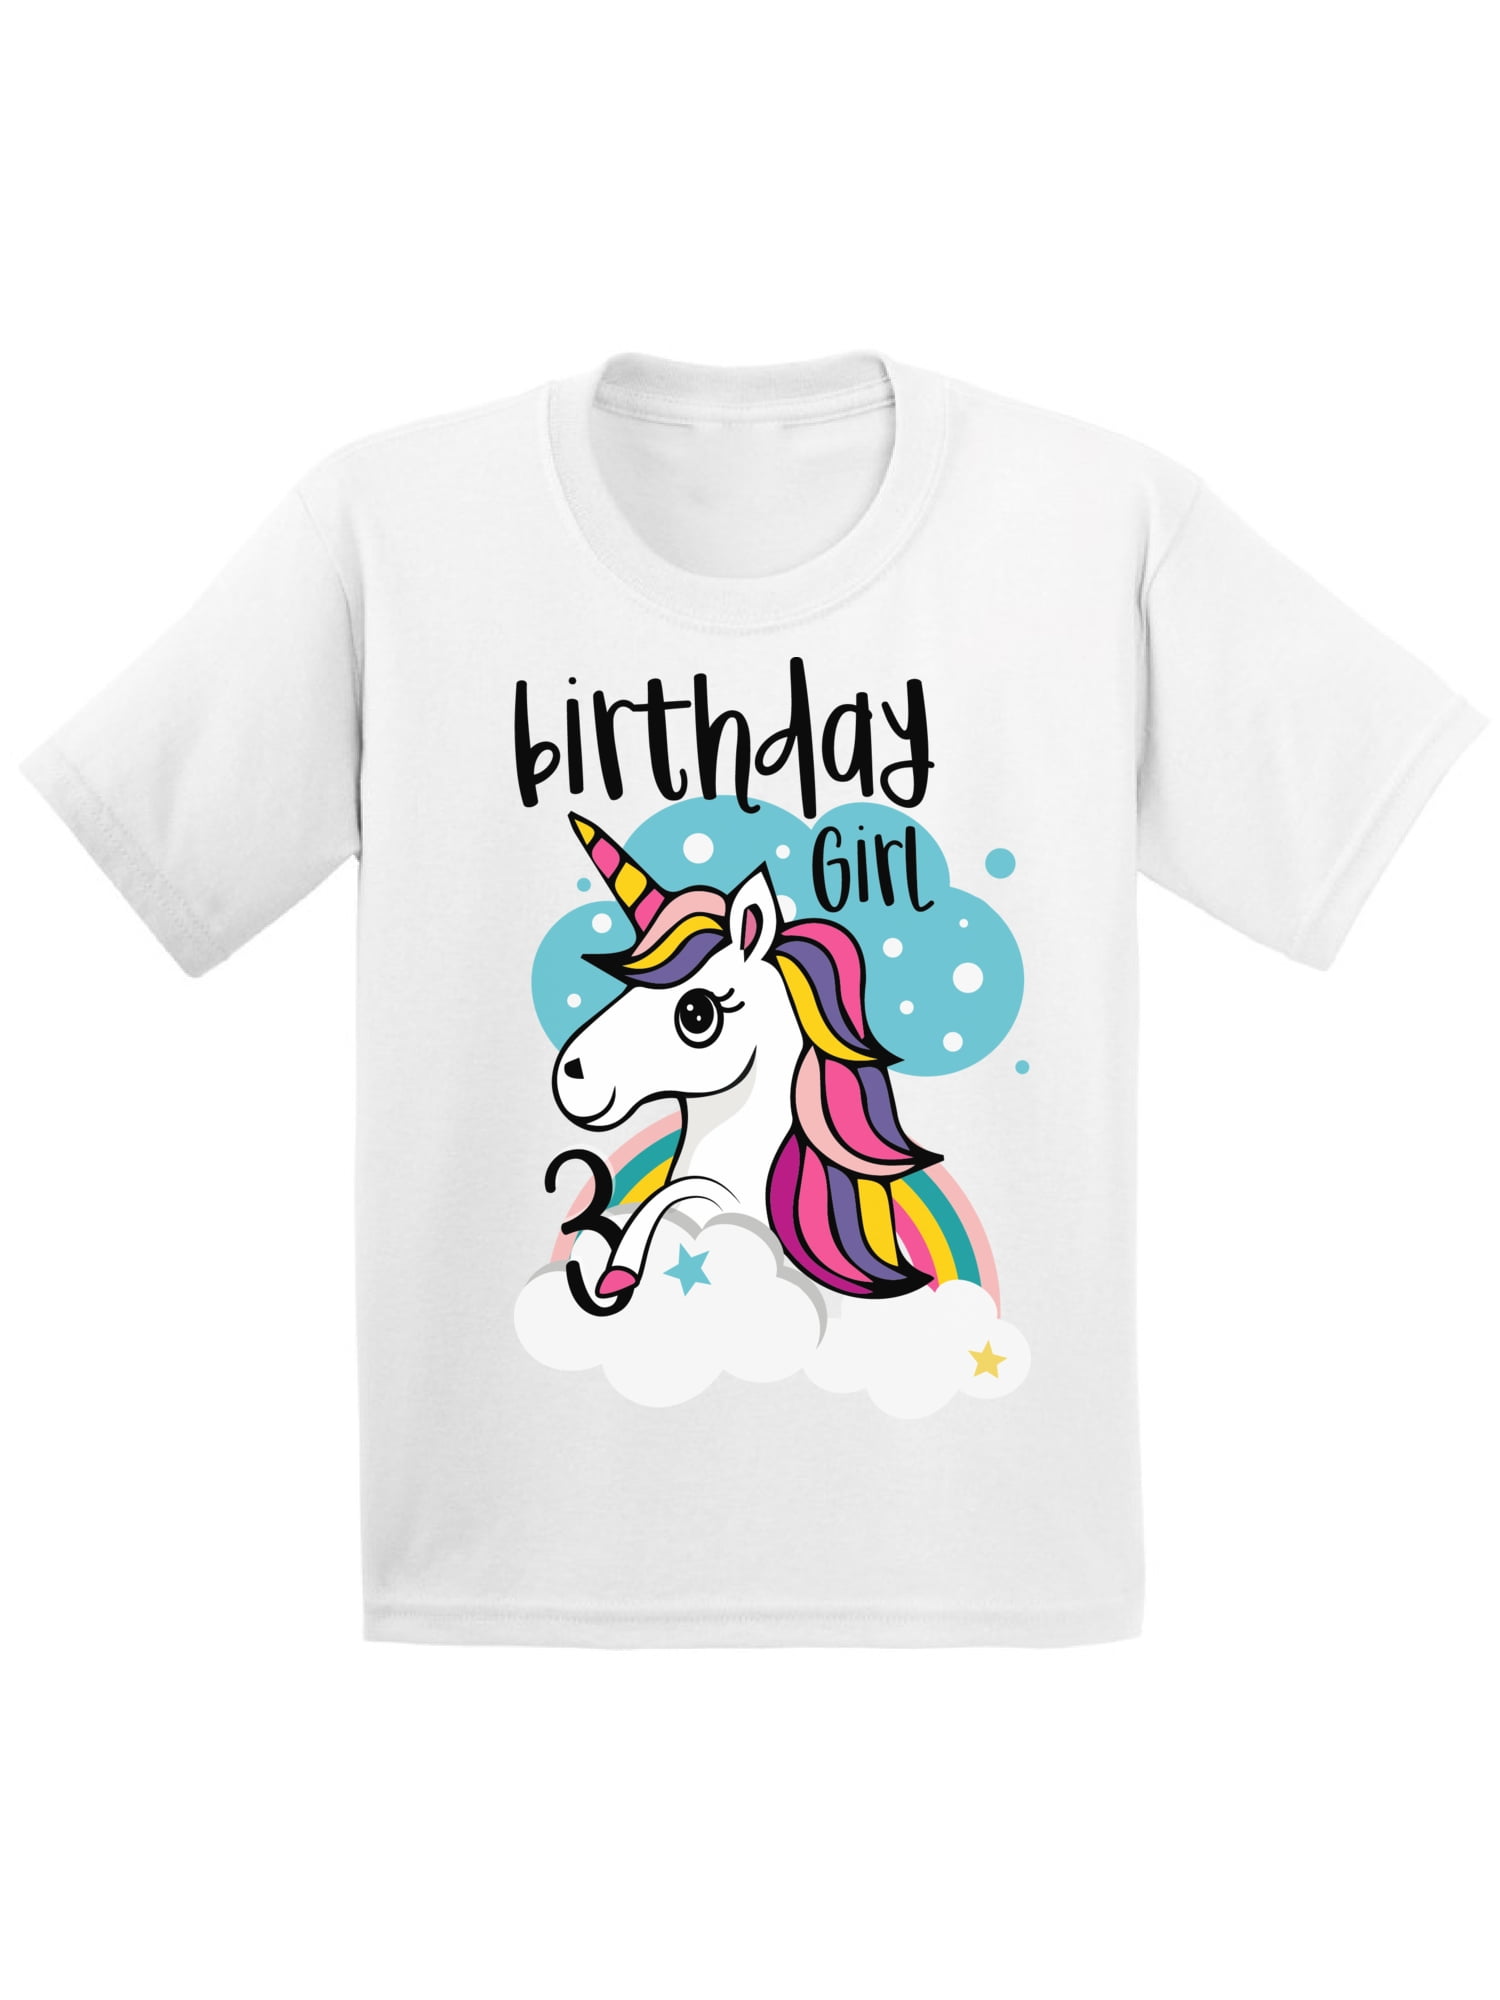 Birthday Name shirt Baby body| T-shirt Birthday shirt personalised Gift idea Birthday Girl Unicorn Unicorn Unicorn Shirt